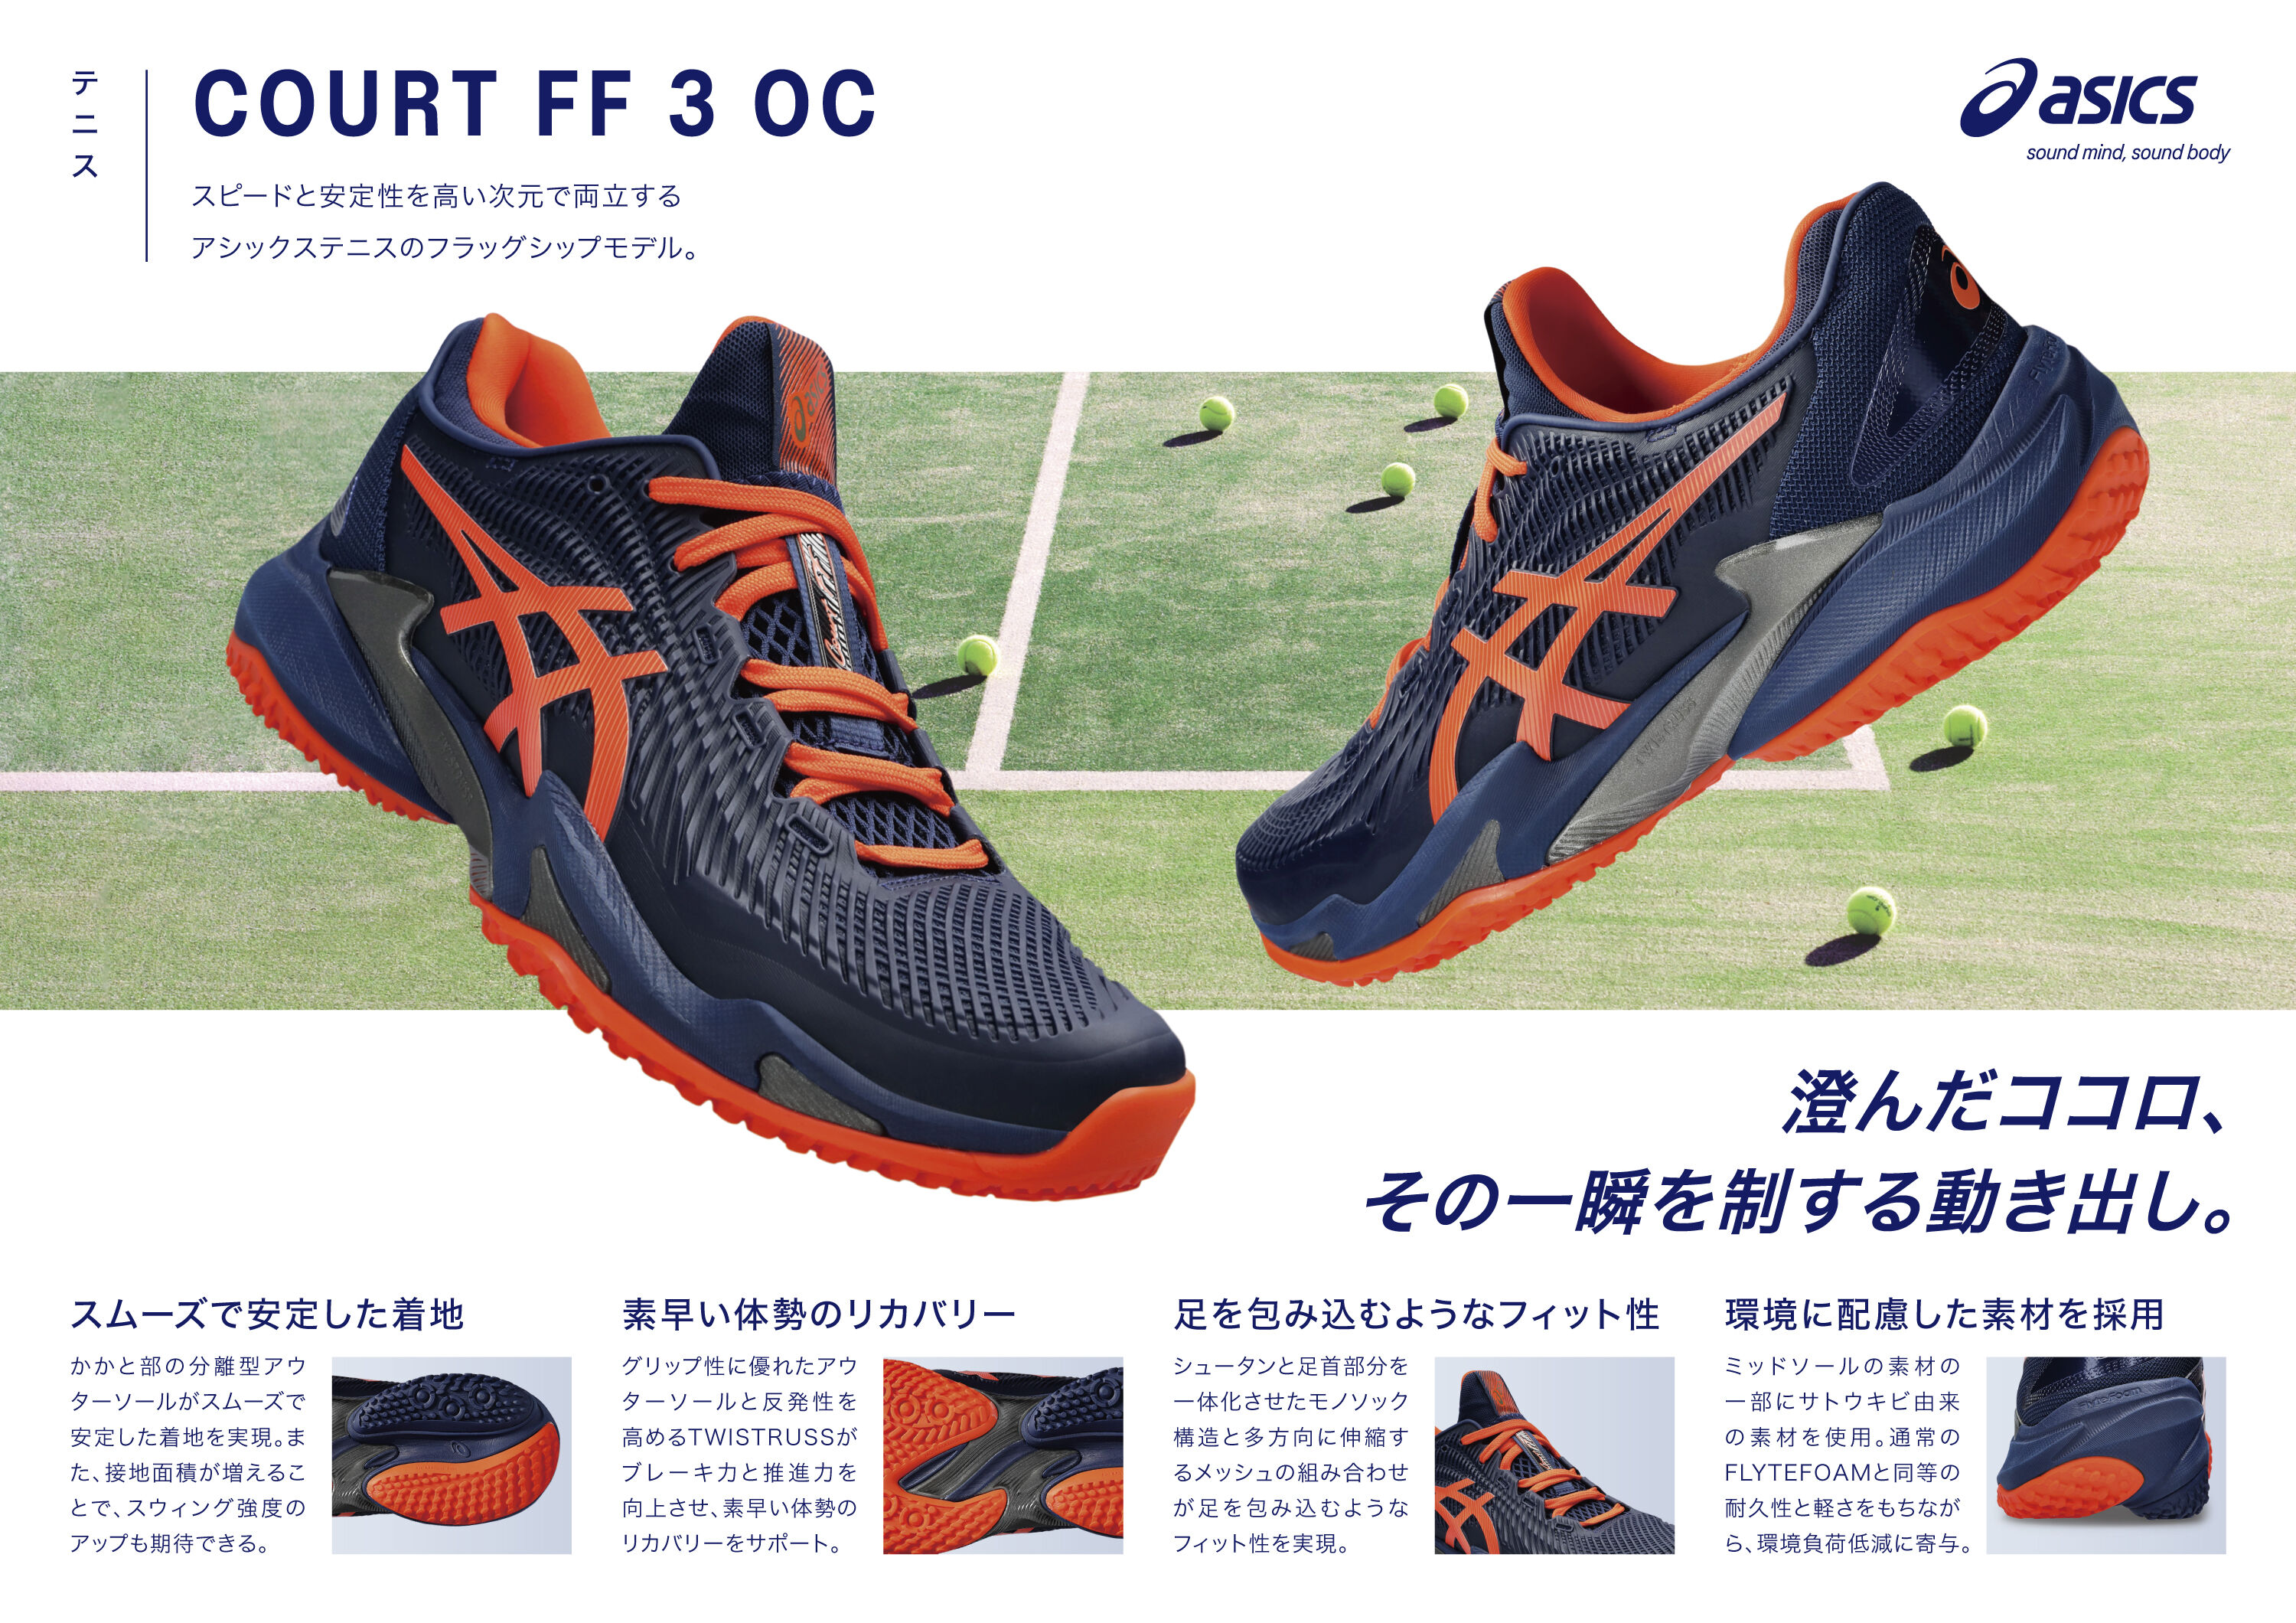 COURT FF 3 OC(オムニ・クレー) | BLUE EXPANSE/KOI | メンズ テニス